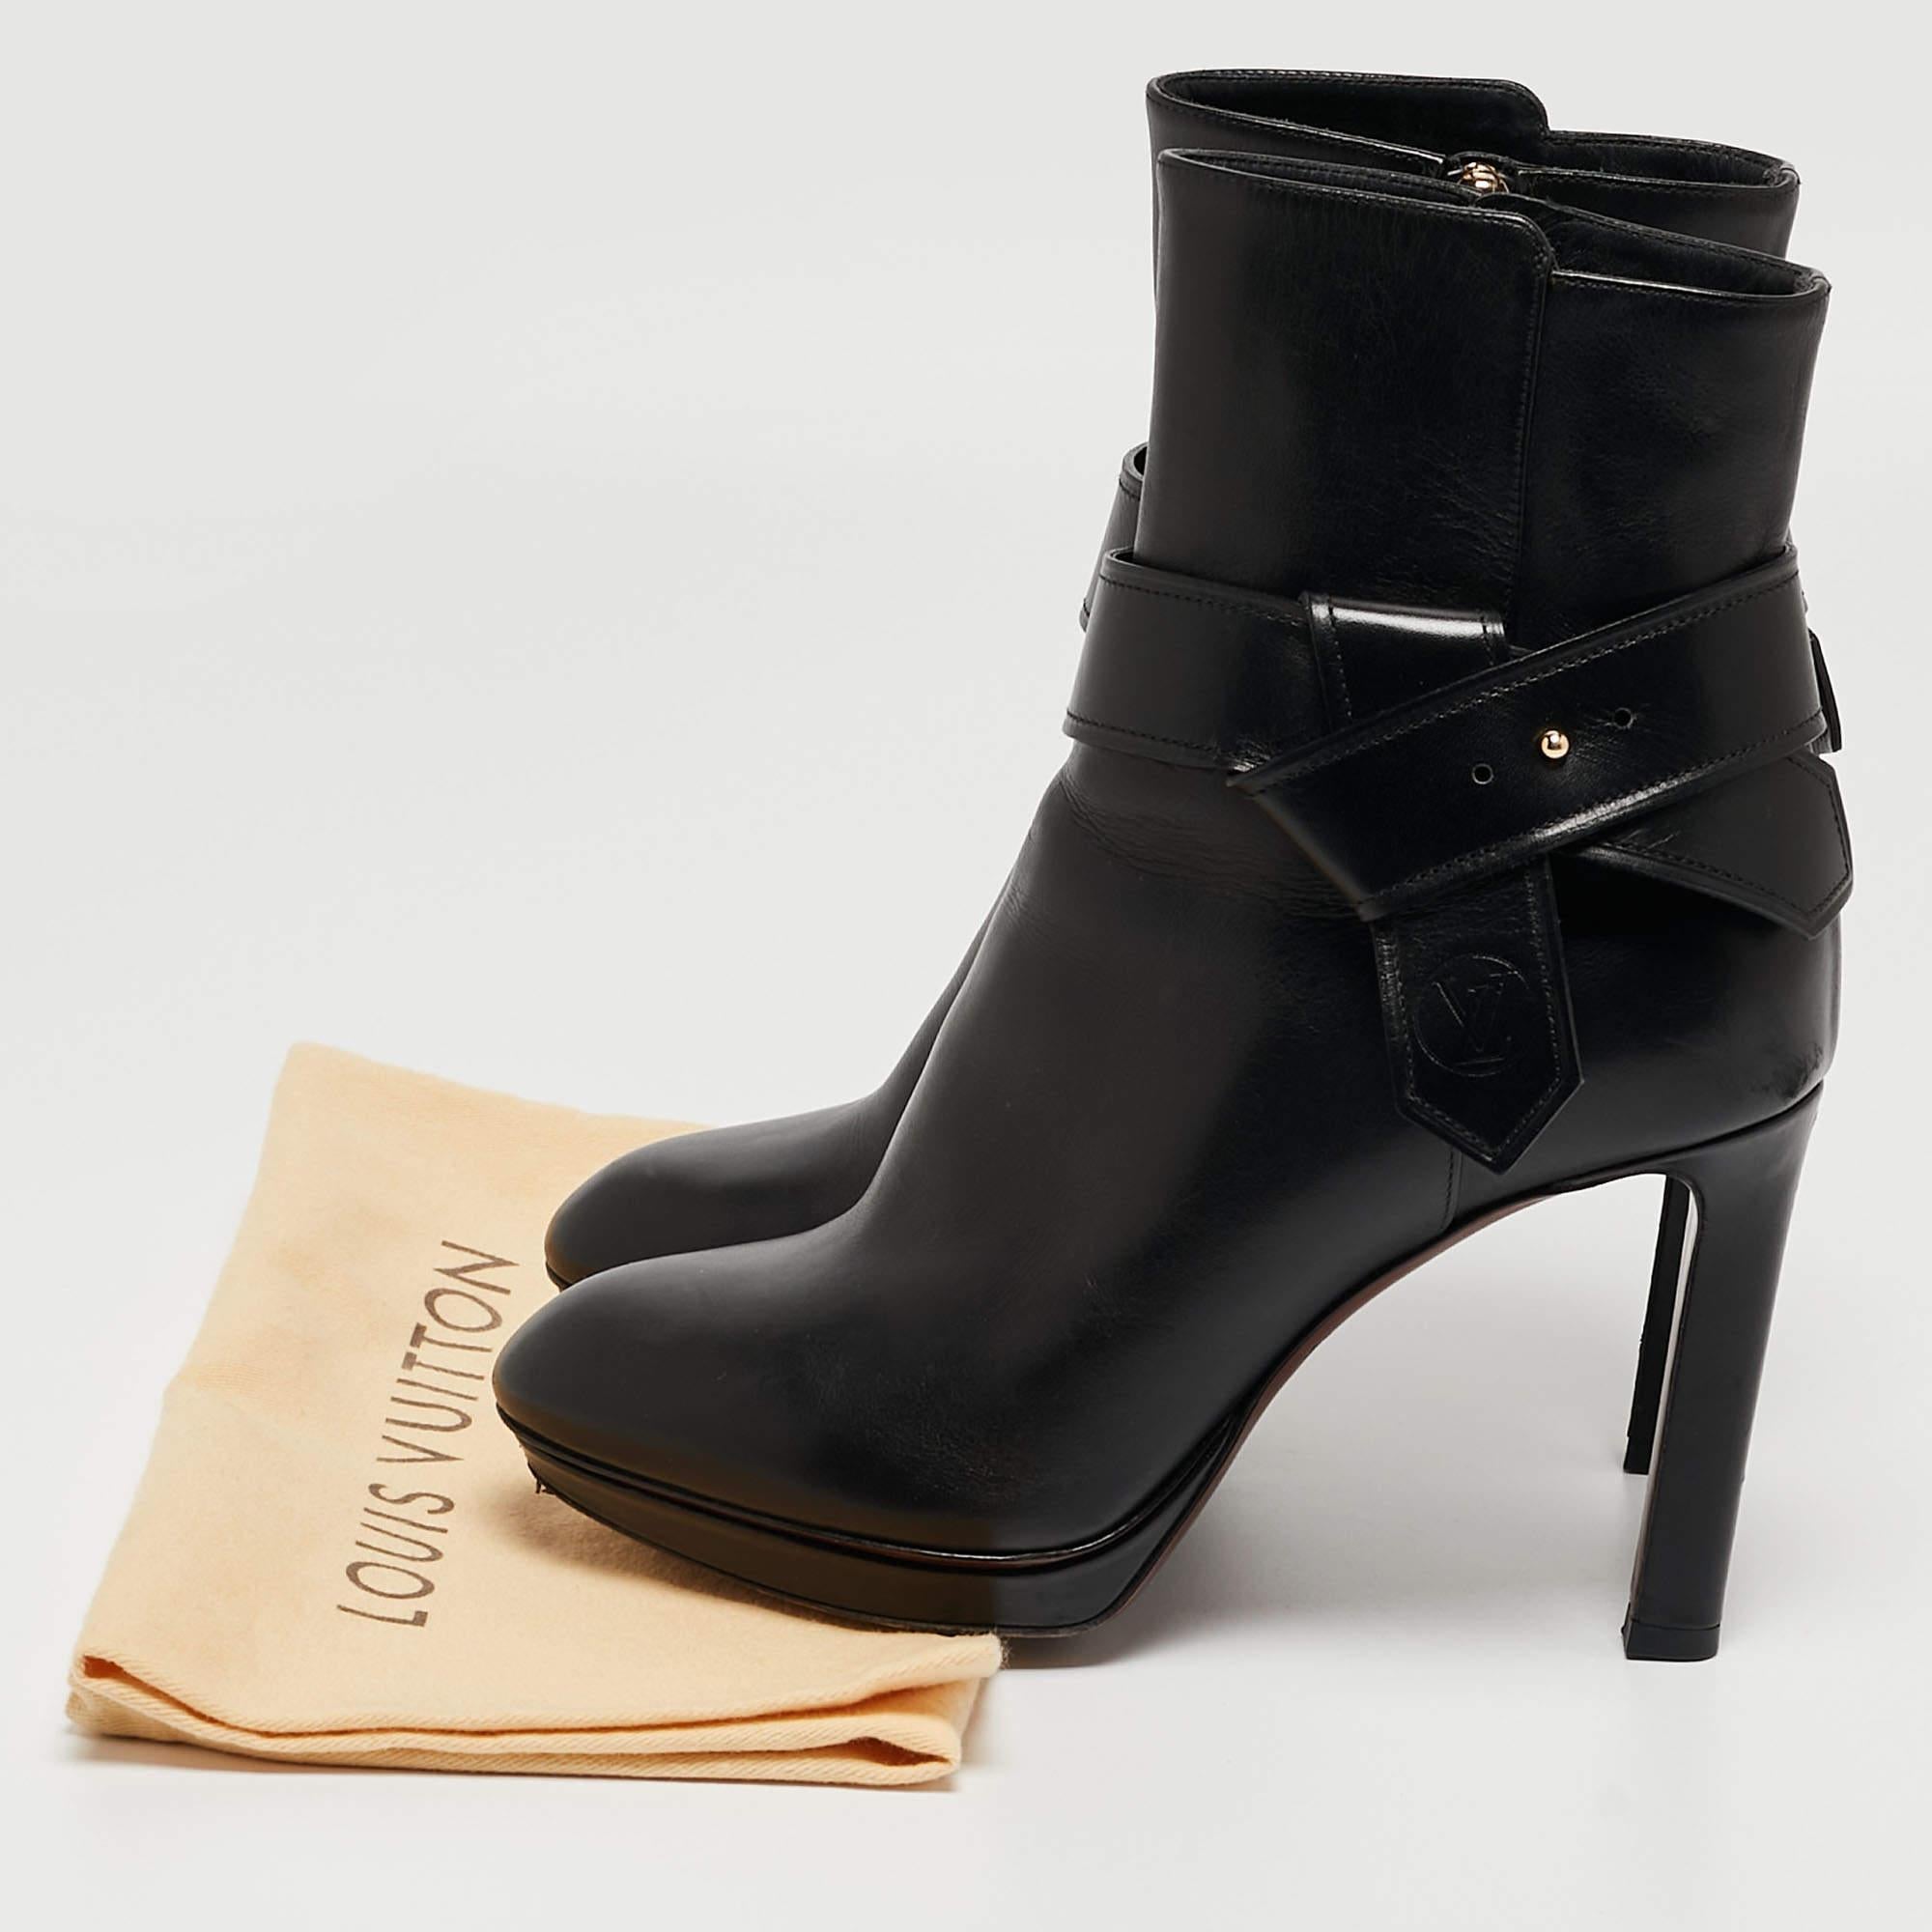 Louis Vuitton Black Leather Platform Ankle Booties Size 37 5